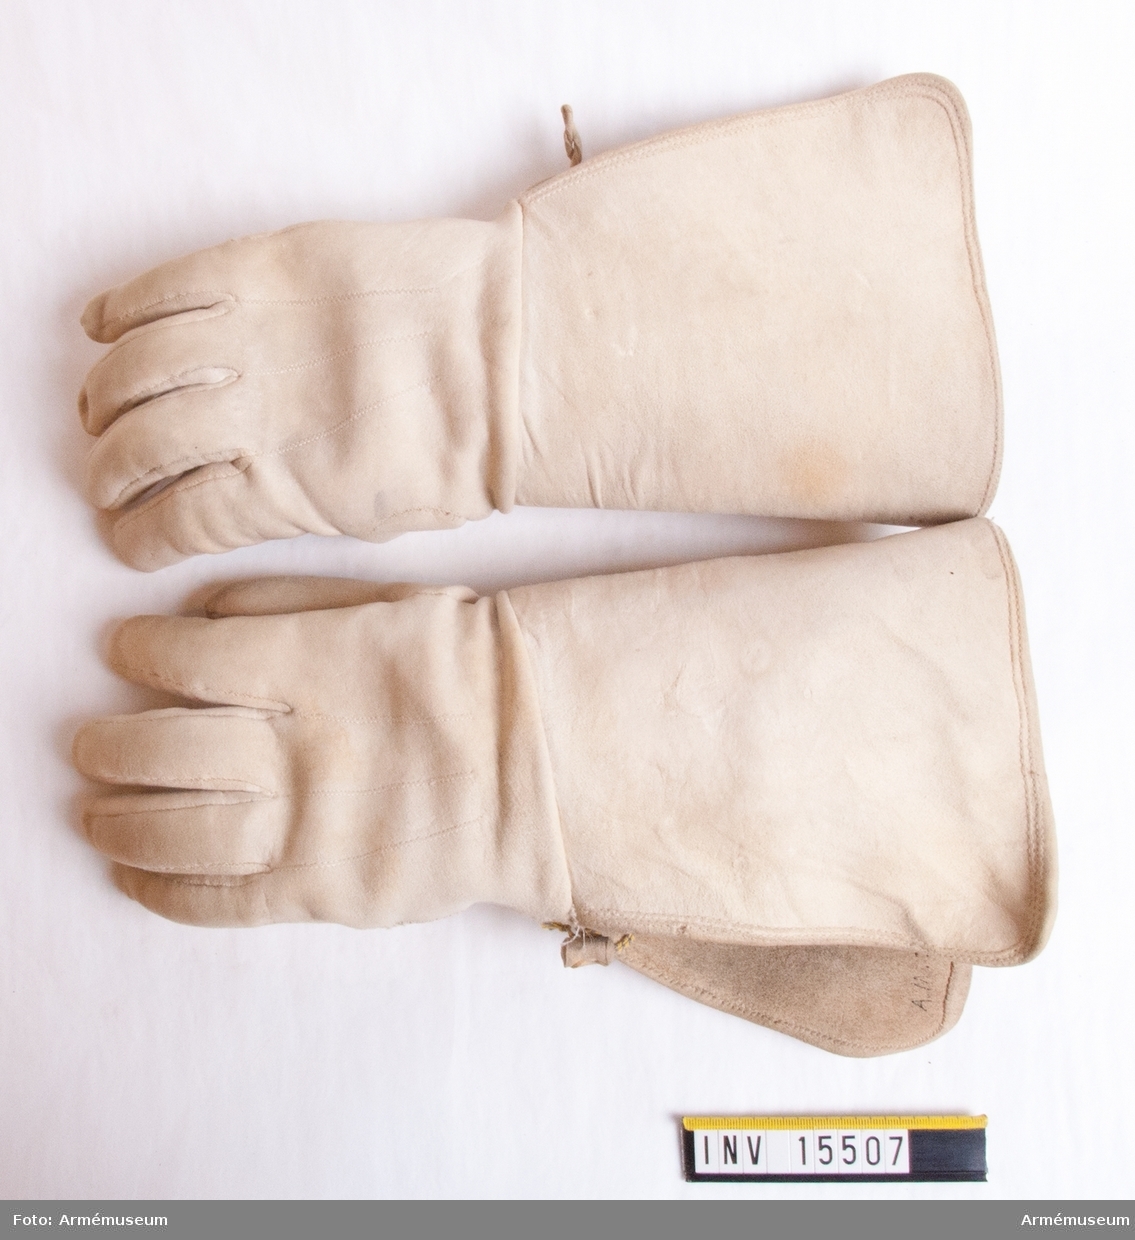 Grupp C I.
Handskar av vitt sämskat läder.